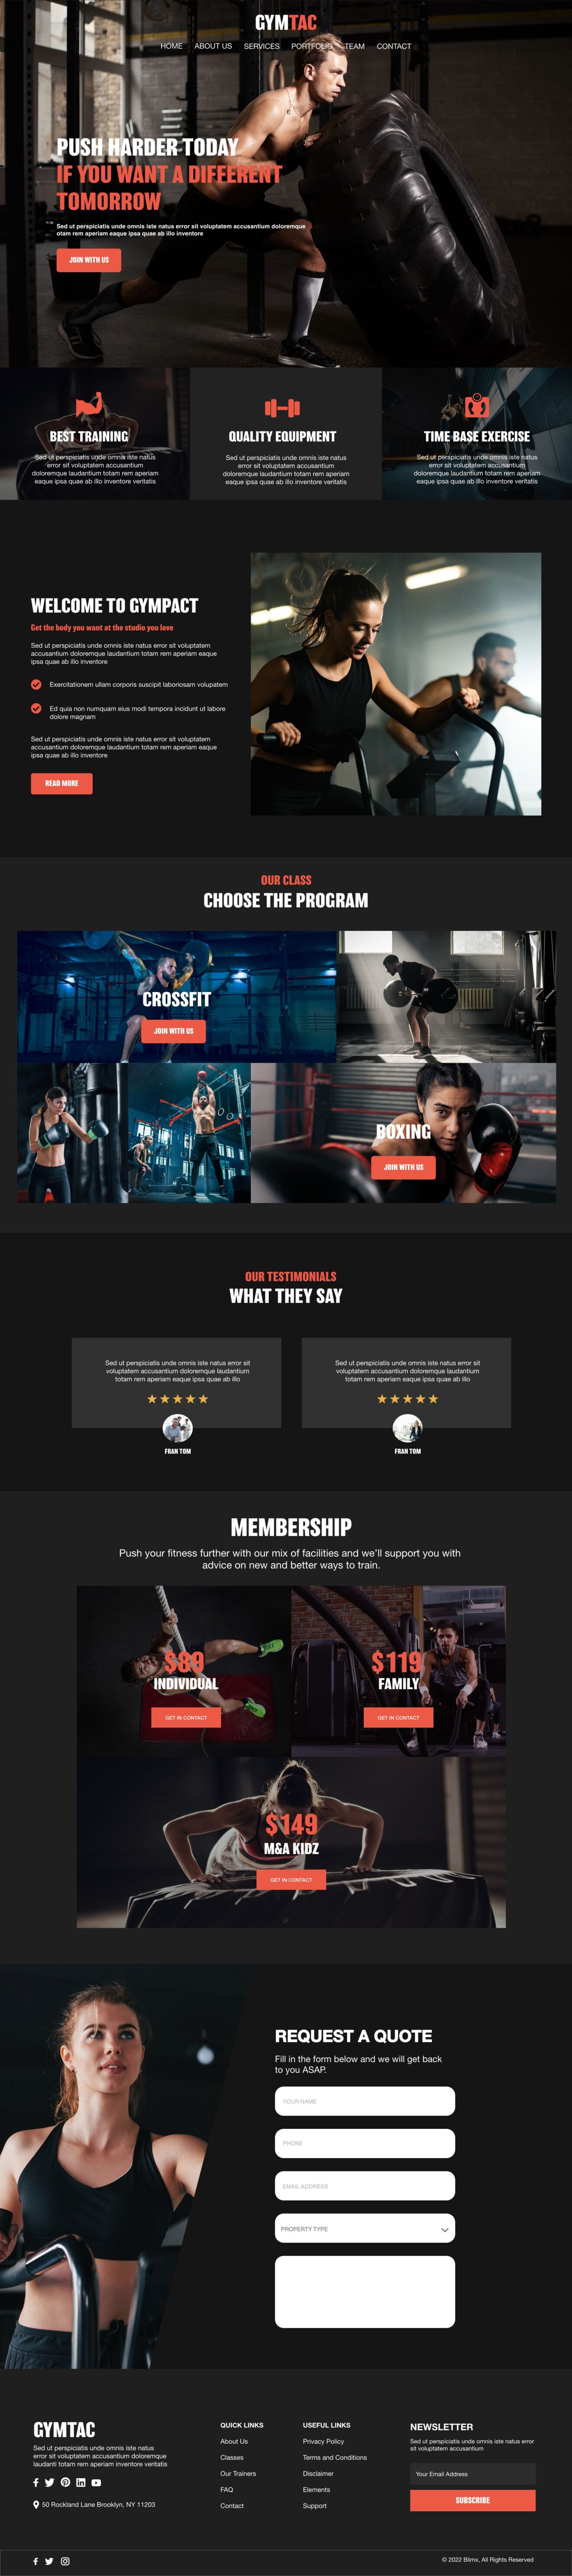 Gym Site Website Design